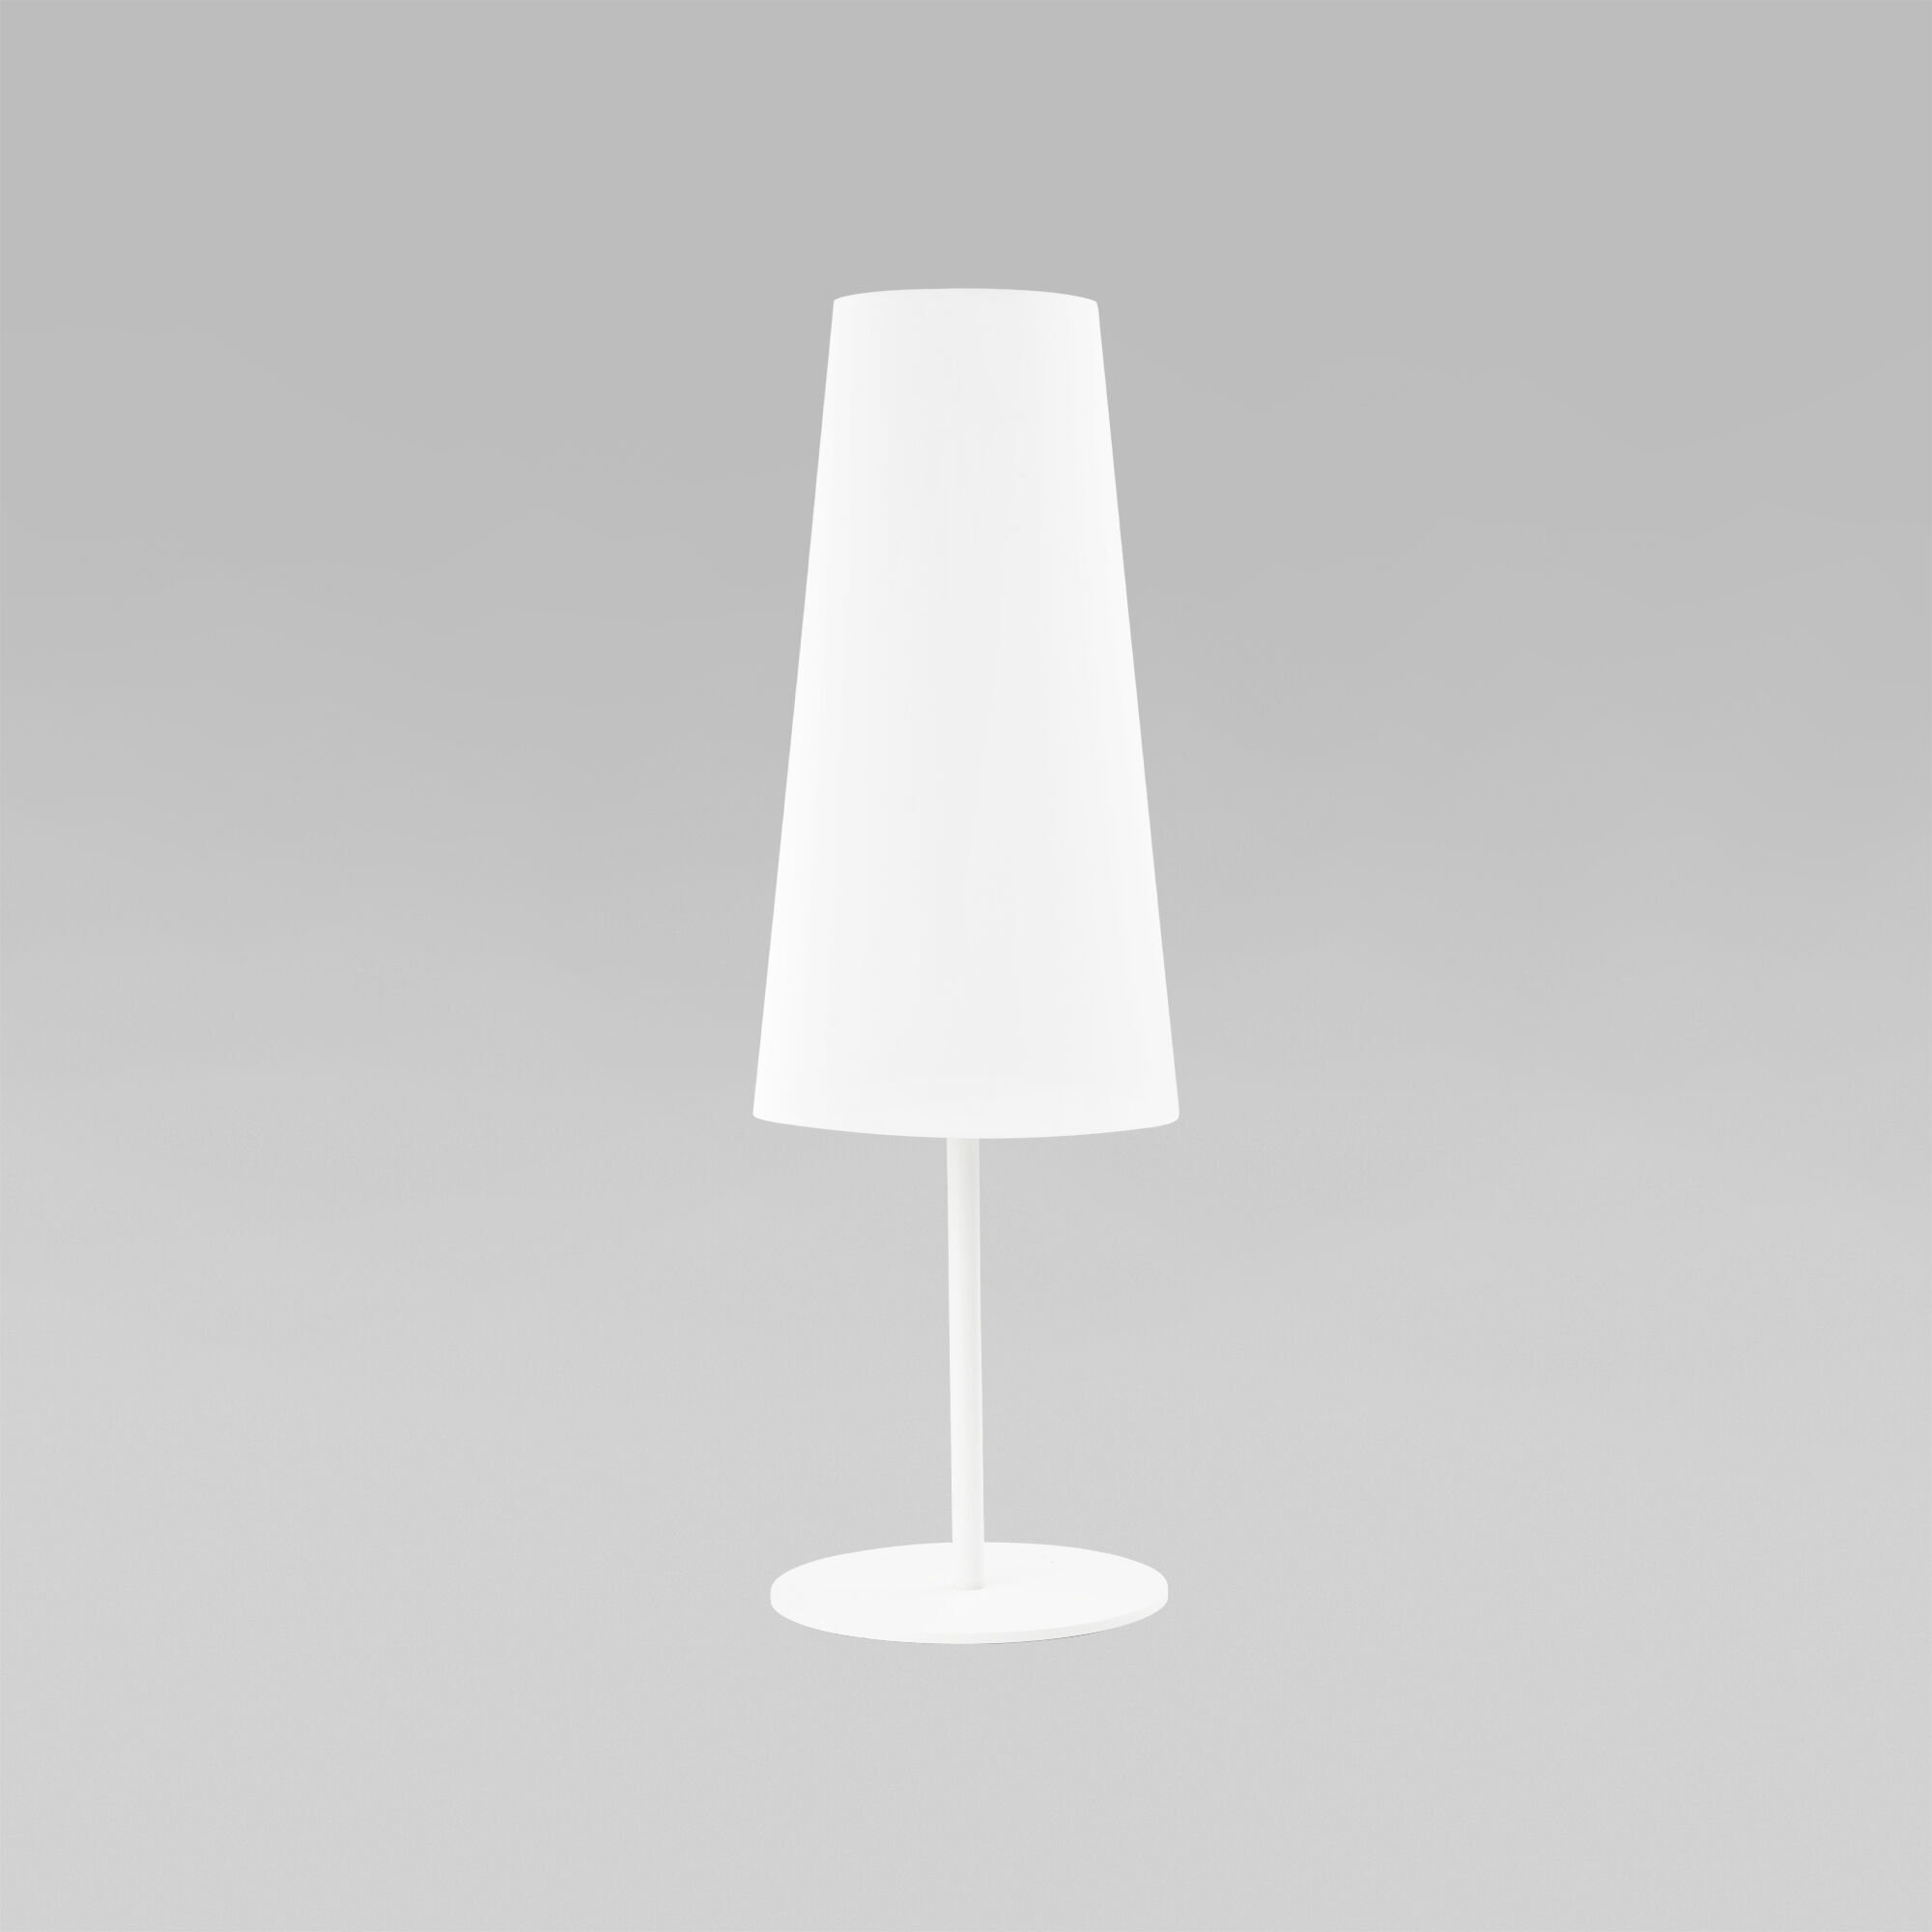 Настольная лампа с абажуром TK Lighting Umbrella 5173 Umbrella White. Фото 1